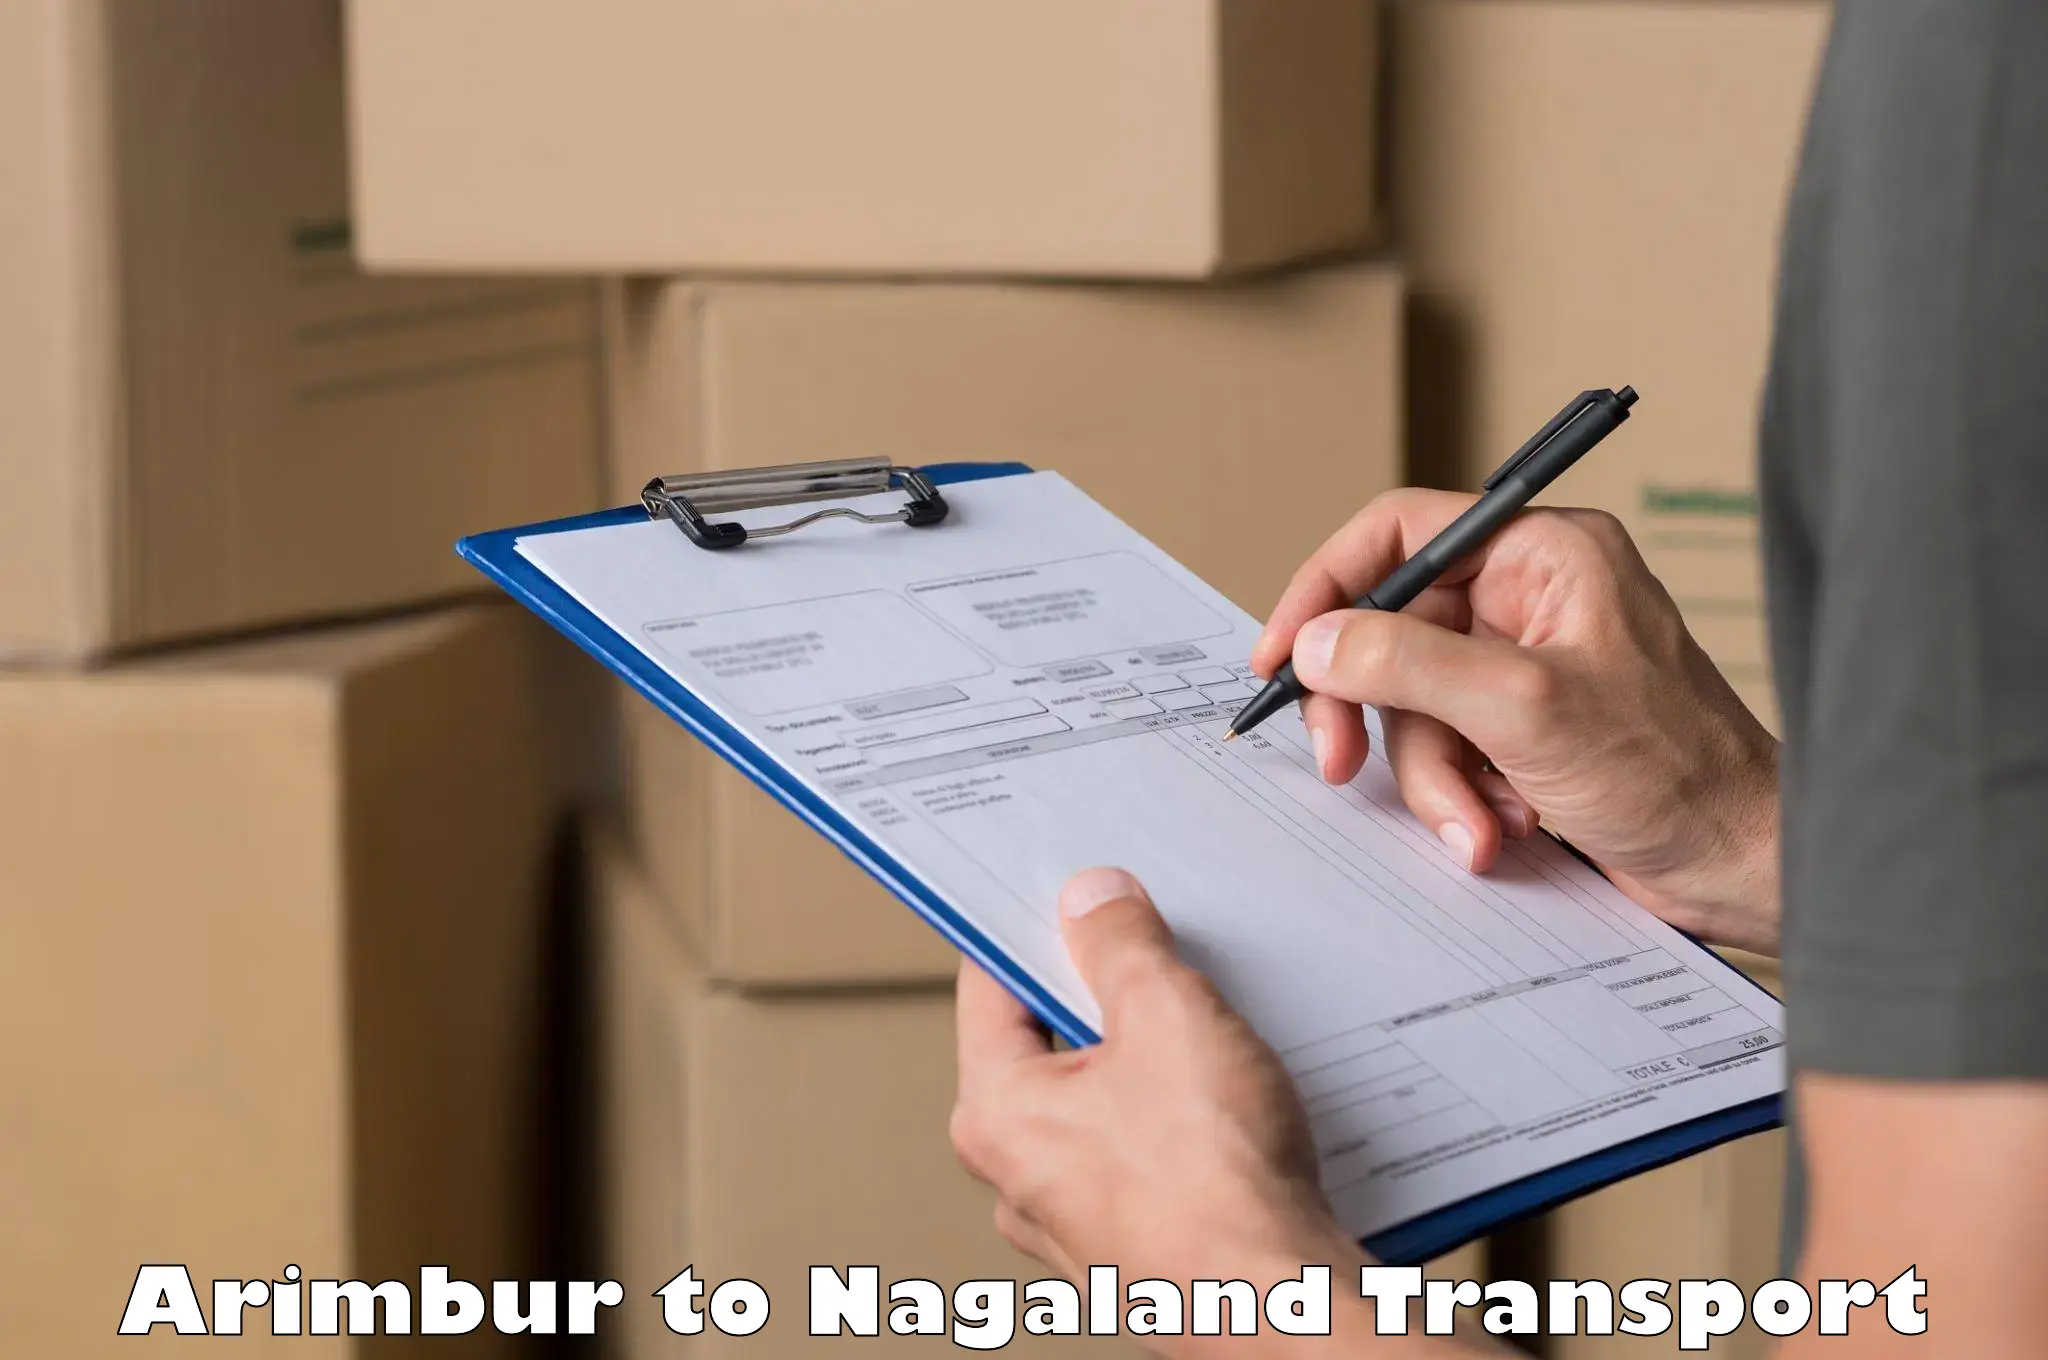 Daily parcel service transport Arimbur to Nagaland